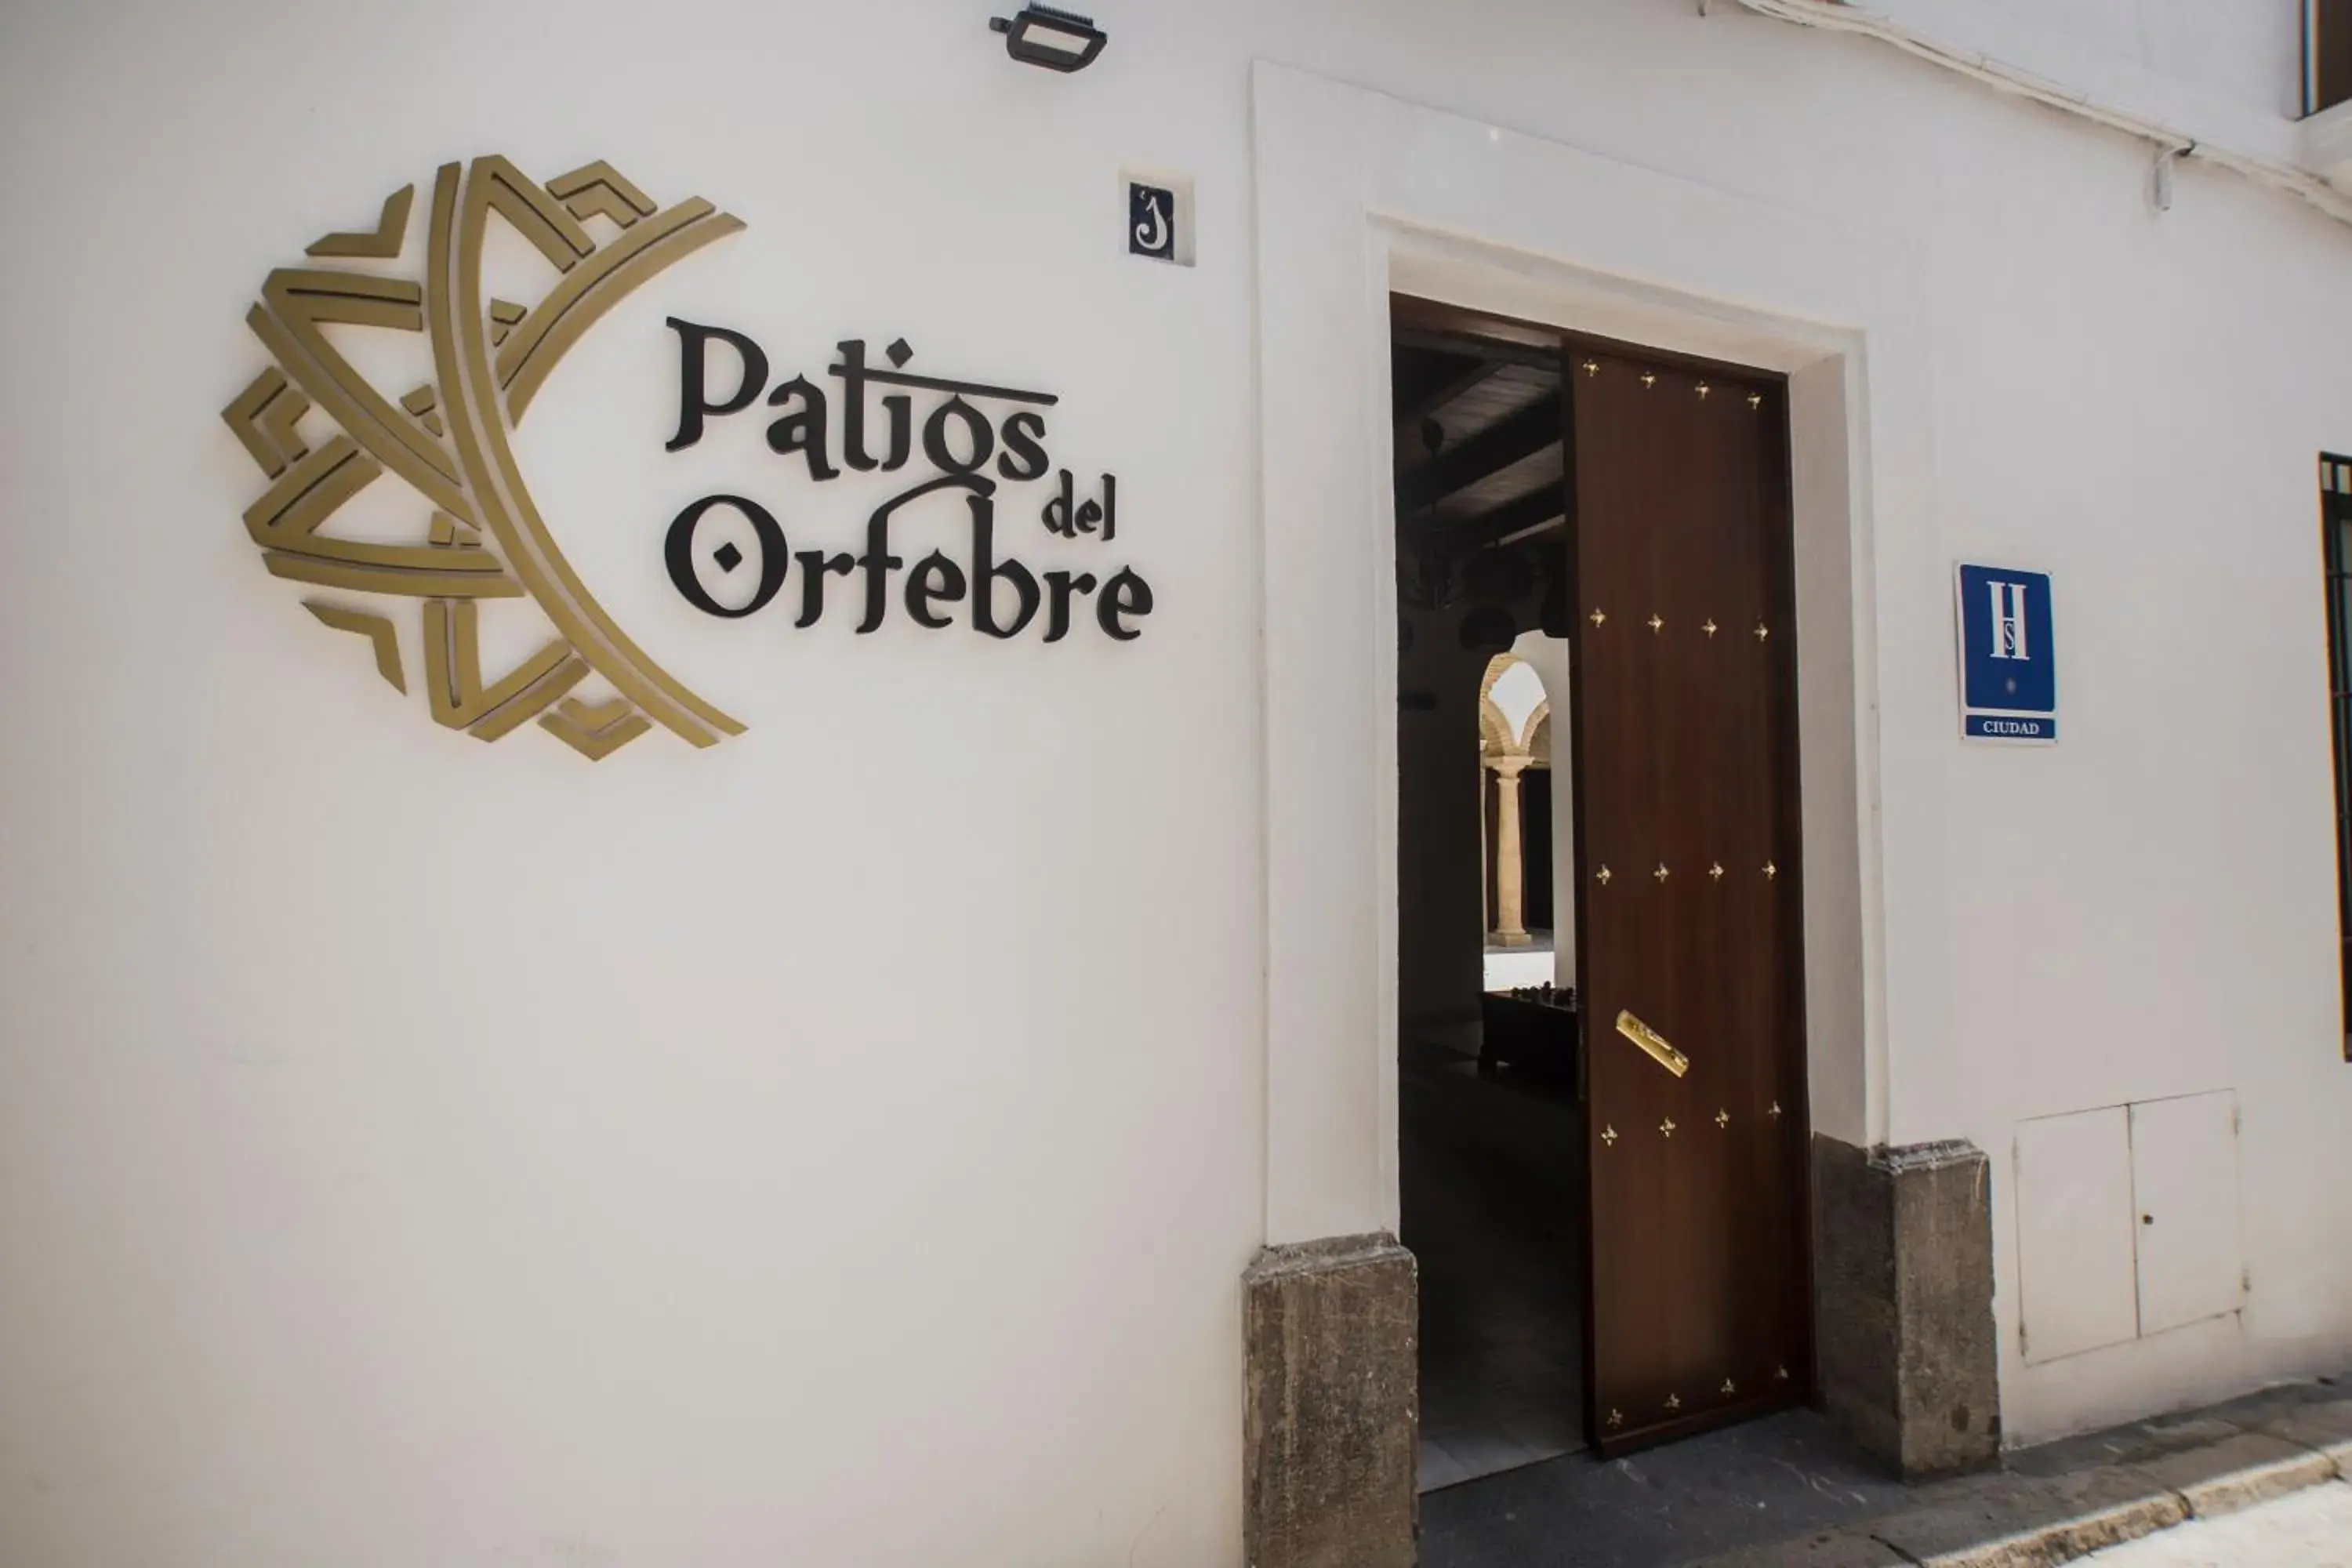 Lobby or reception in Patios del Orfebre